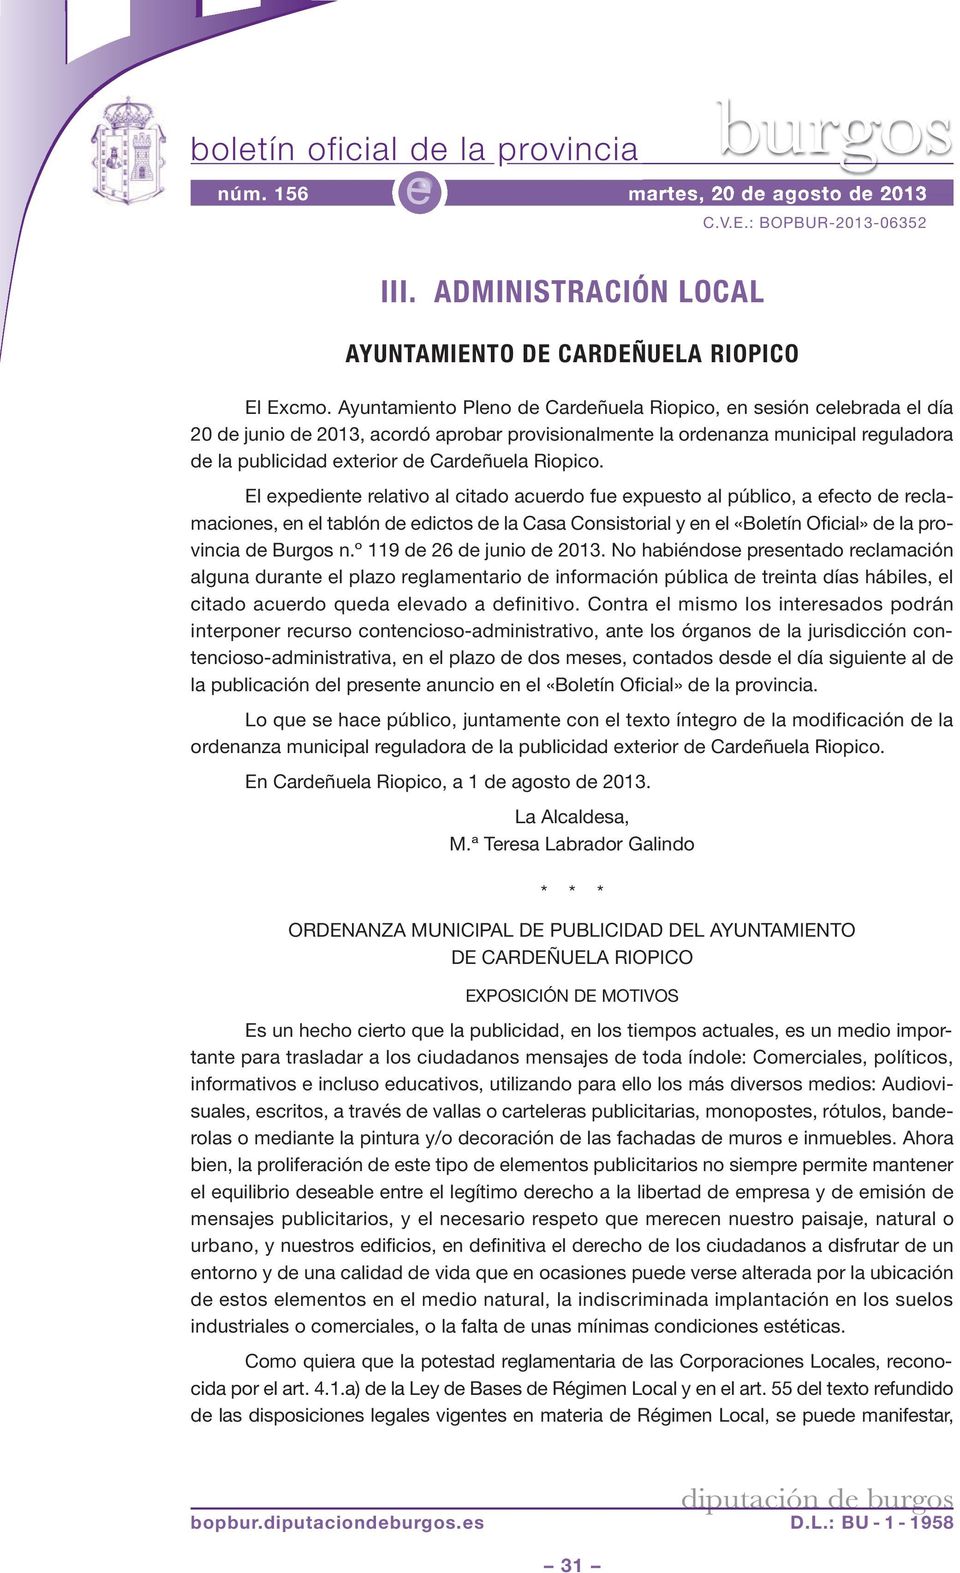 El xpdint rlativo al citado acurdo fu xpusto al público, a fcto d rclamacions, n l tablón d dictos d la Casa Consistorial y n l «Boltín Oficial» d la provincia d Burgos n.º 119 d 26 d junio d 2013.